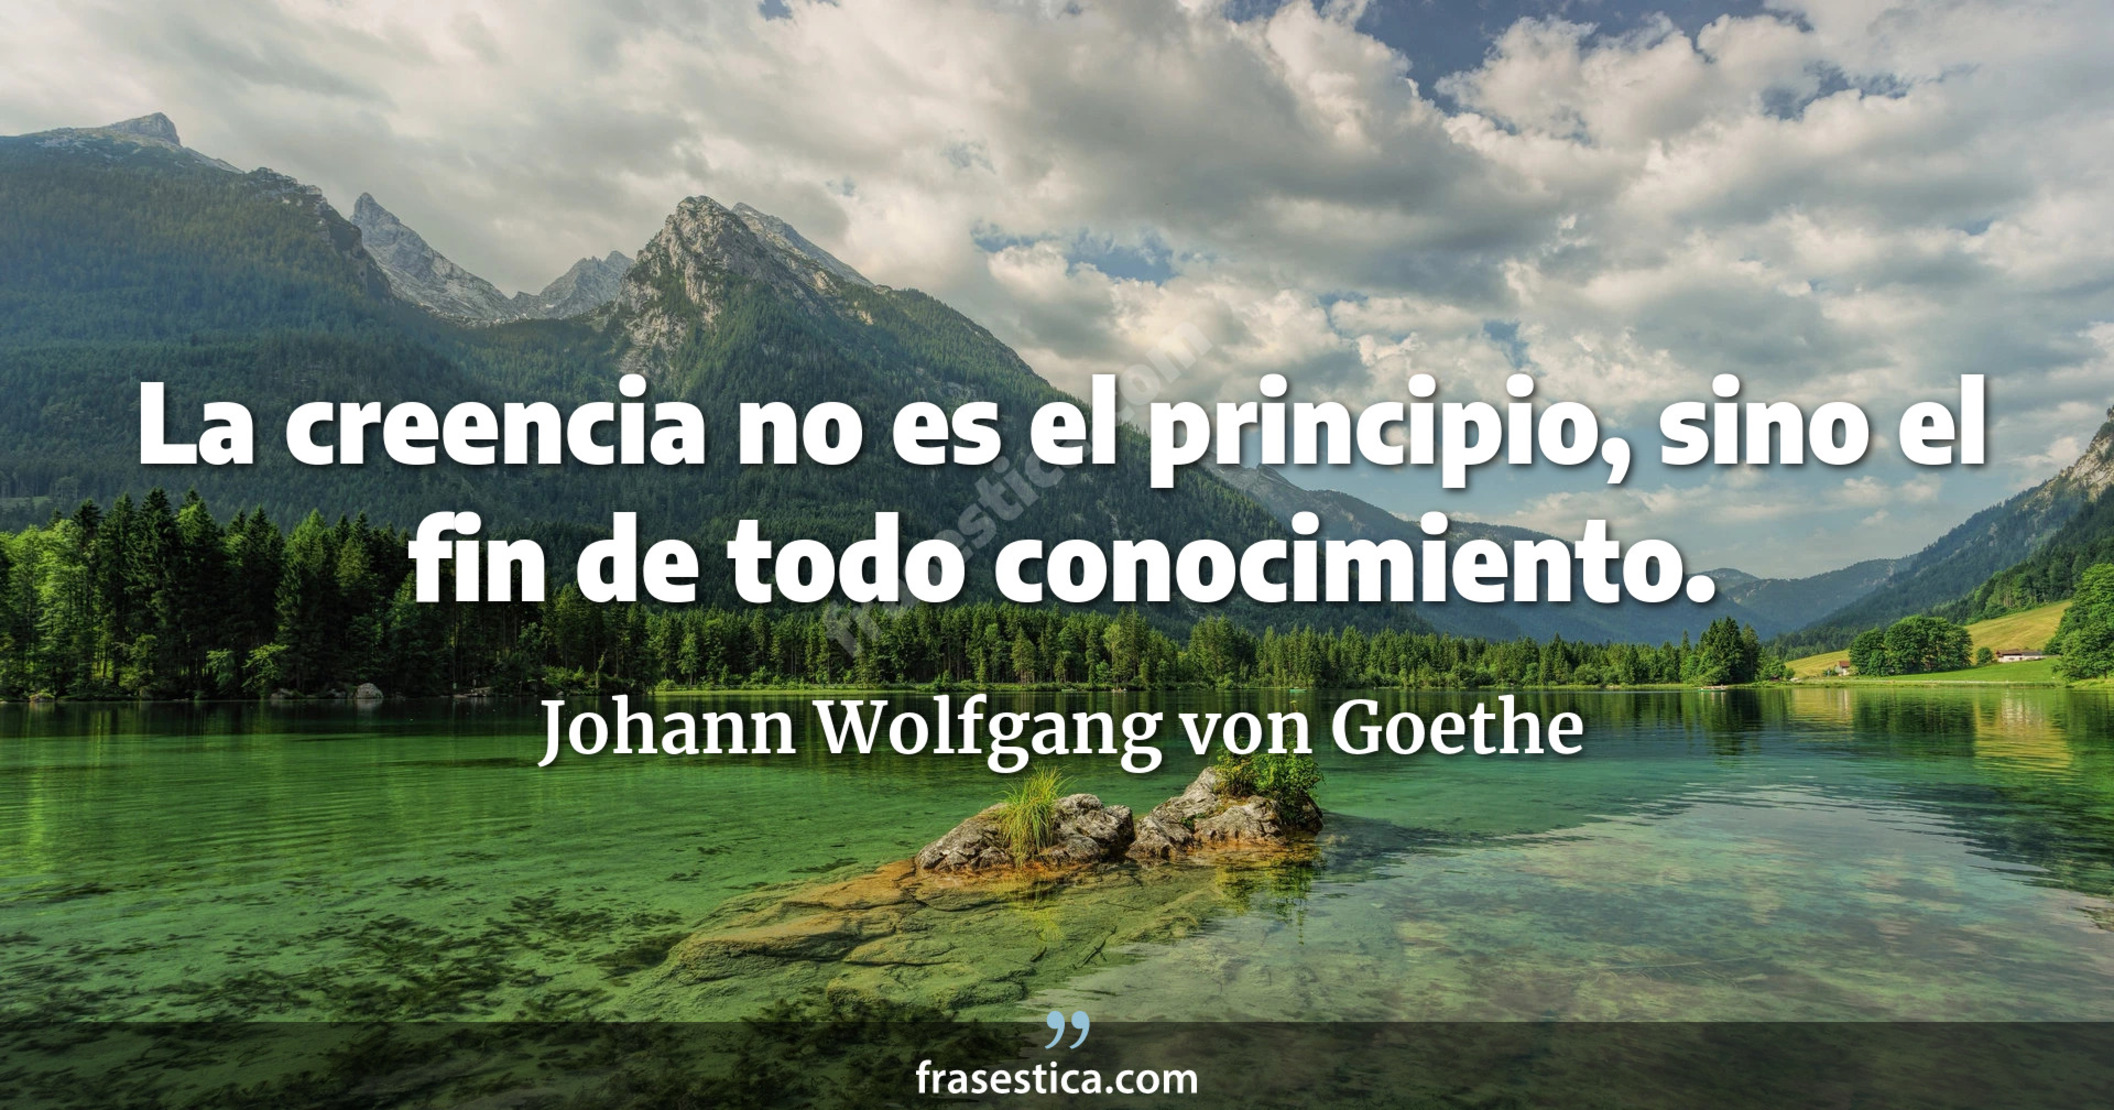 La creencia no es el principio, sino el fin de todo conocimiento. - Johann Wolfgang von Goethe